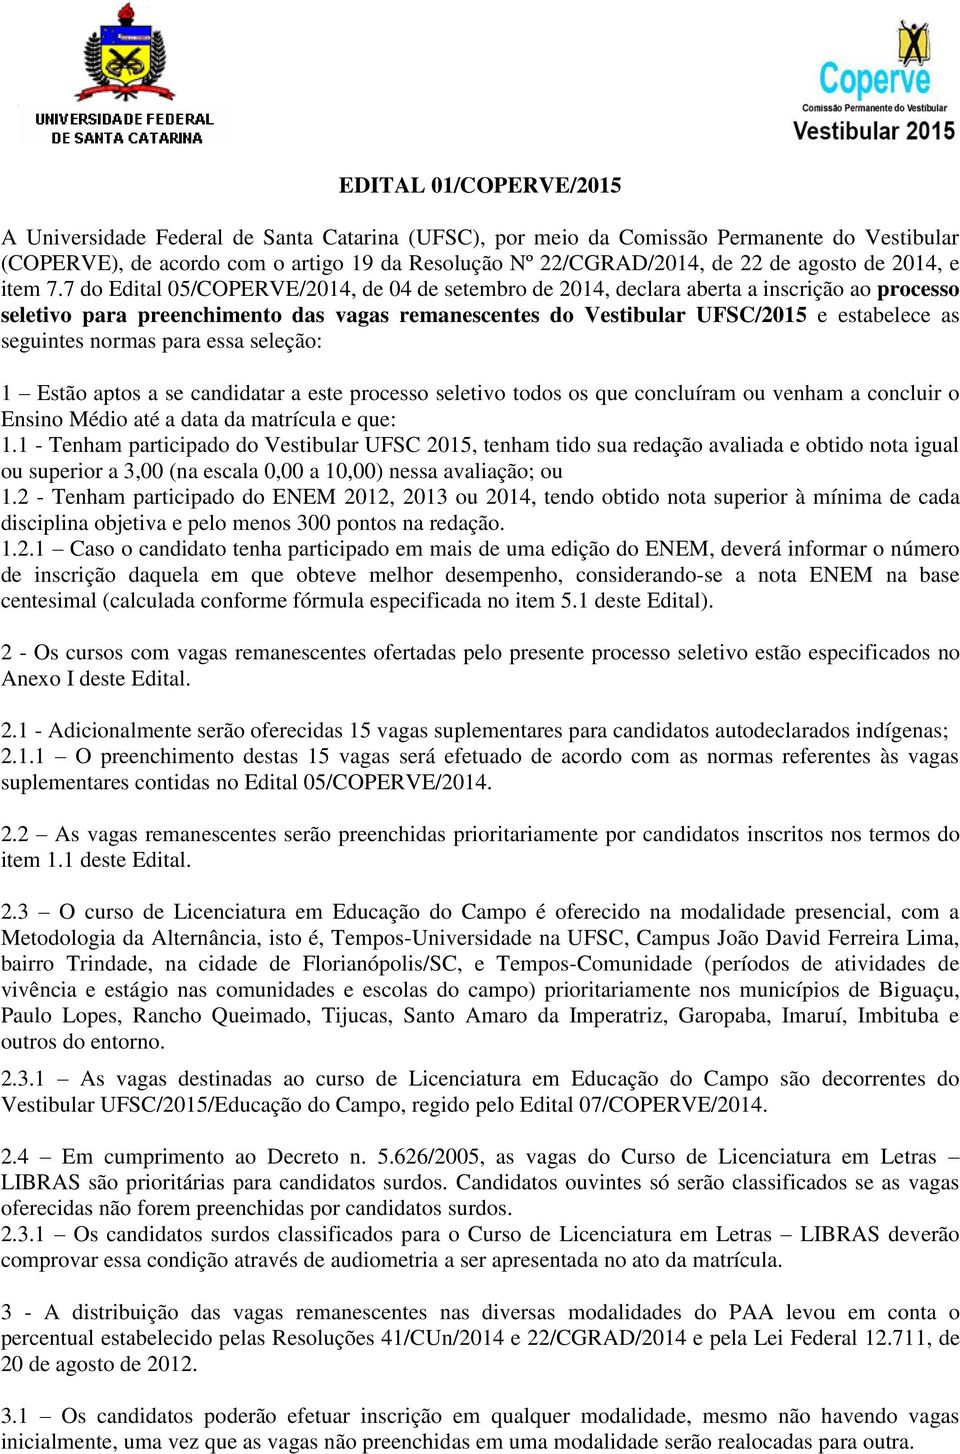 7 do Edital 05/COPERVE/2014, de 04 de setembro de 2014, declara aberta a inscrição ao processo seletivo para preenchimento das vagas remanescentes do Vestibular UFSC/2015 e estabelece as seguintes